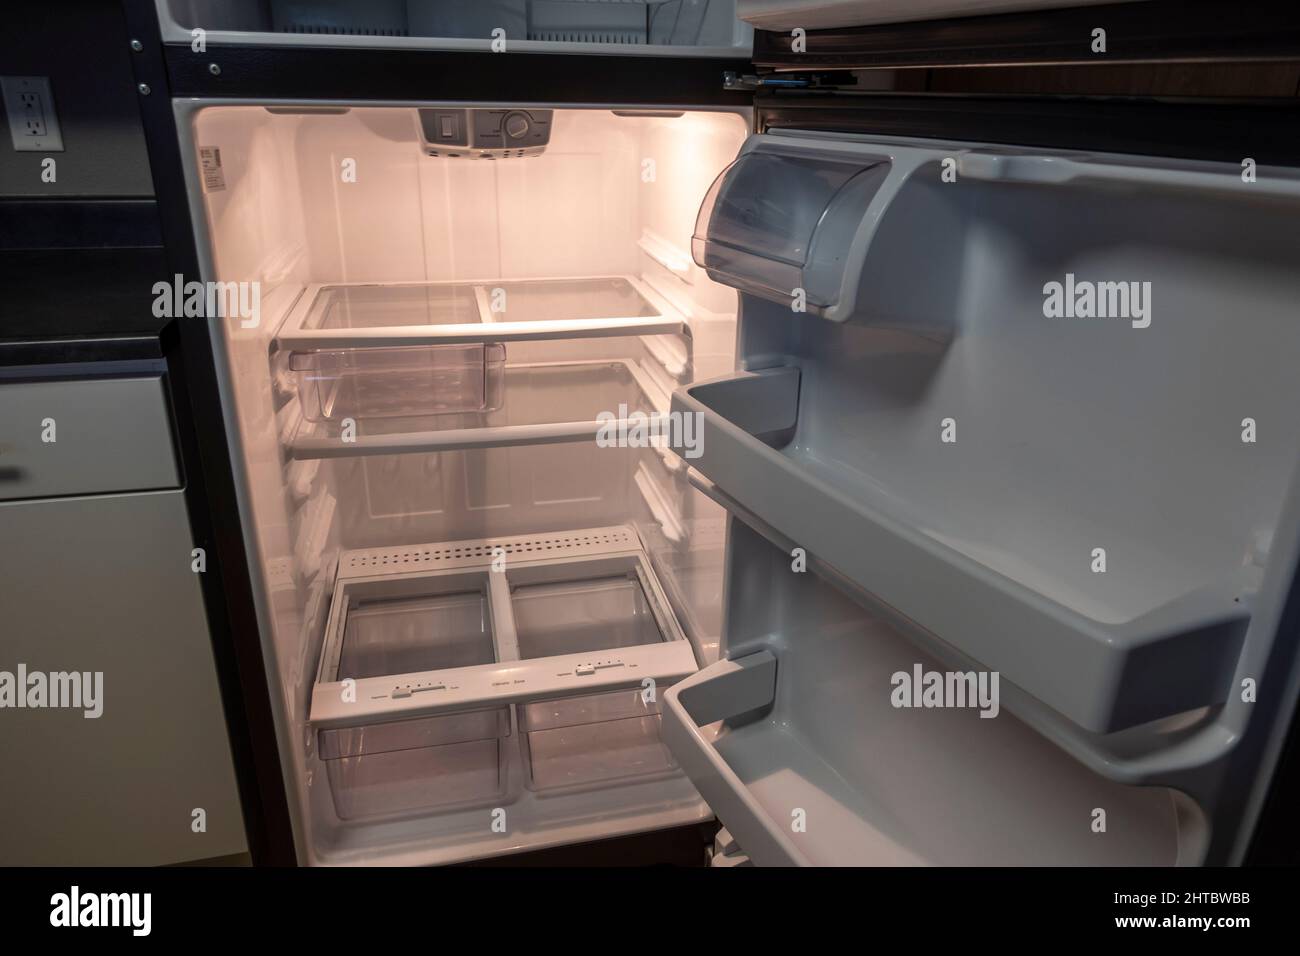 Blick auf einen weißen, leeren Kühlschrank mit weit geöffneter Tür, um mehrere Regale und Schubladen ohne Nahrung zu sehen Stockfoto